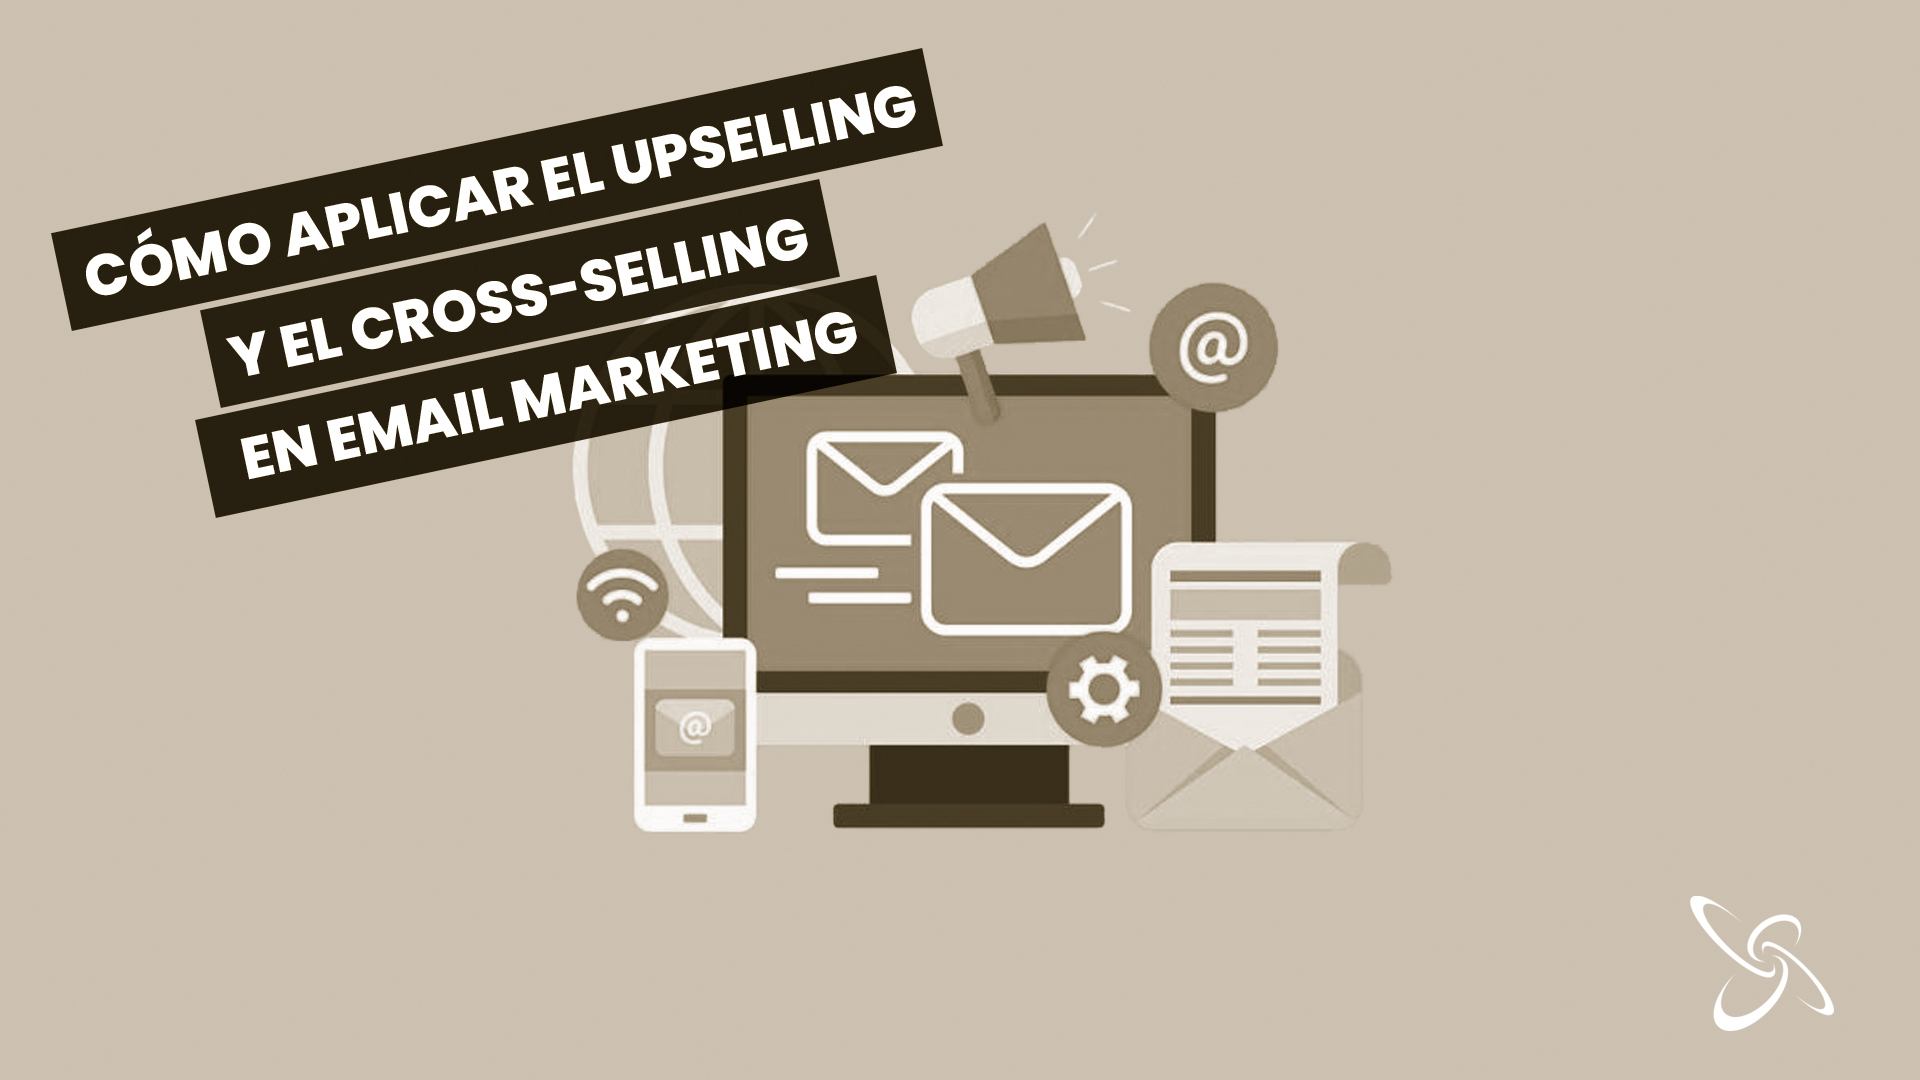 Com aplicar el upselling i el cross-selling en email màrqueting